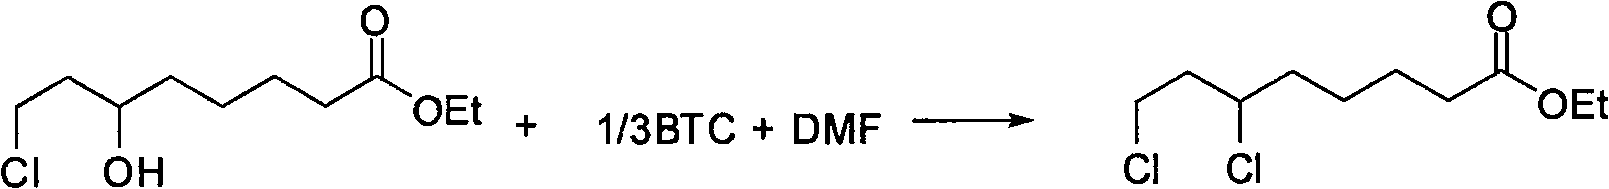 Chemical method for synthesizing 6,8-dichloro ethyl cacodylic acid caprylate